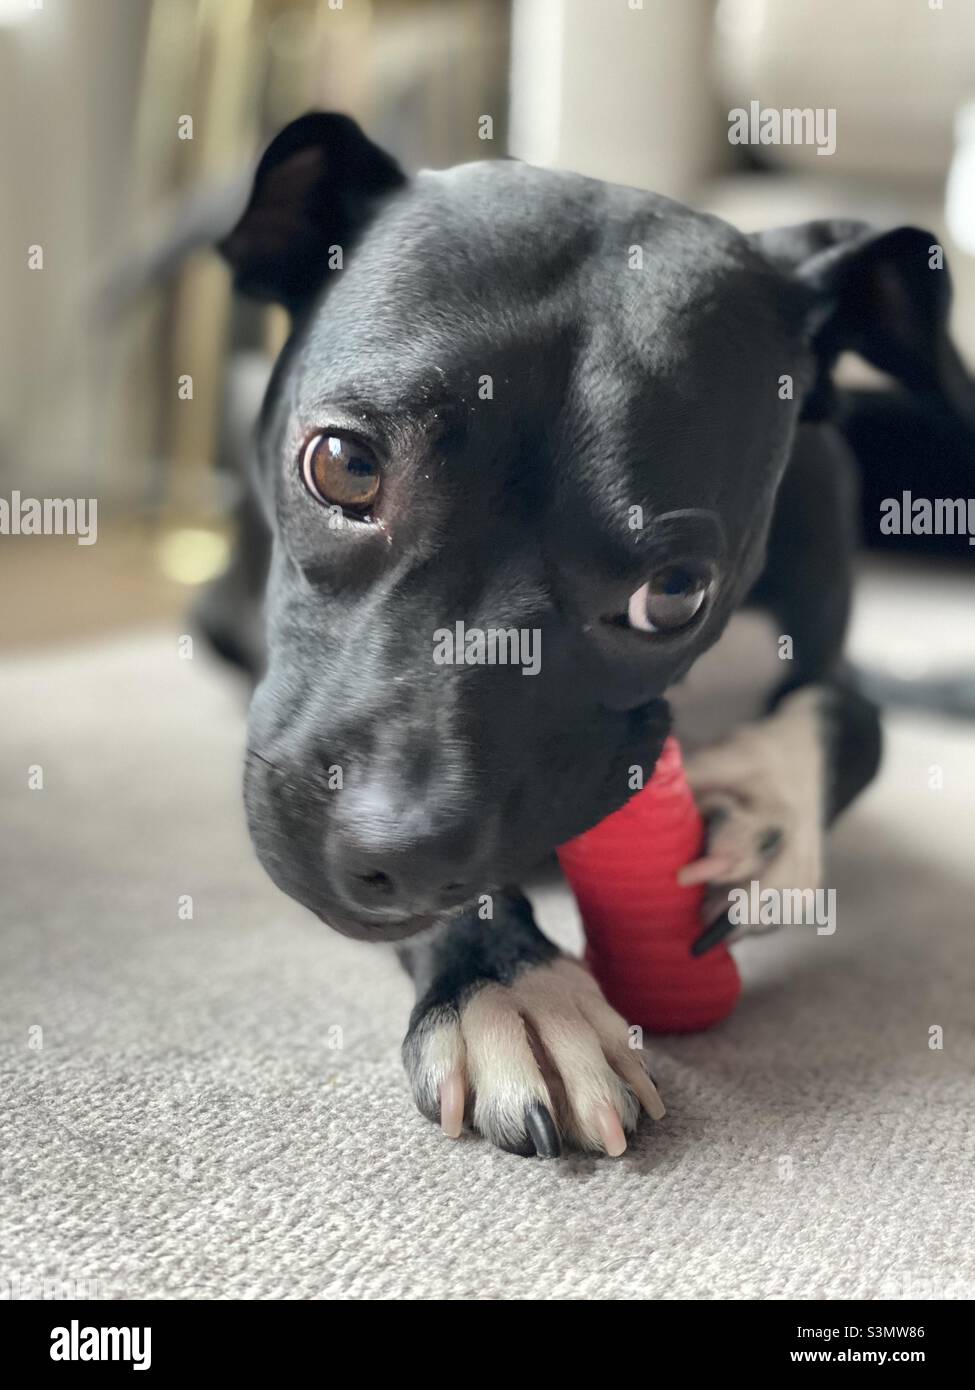 Cucciolo di cane nero masticare giocattolo rosso primo piano vista frontale Foto Stock